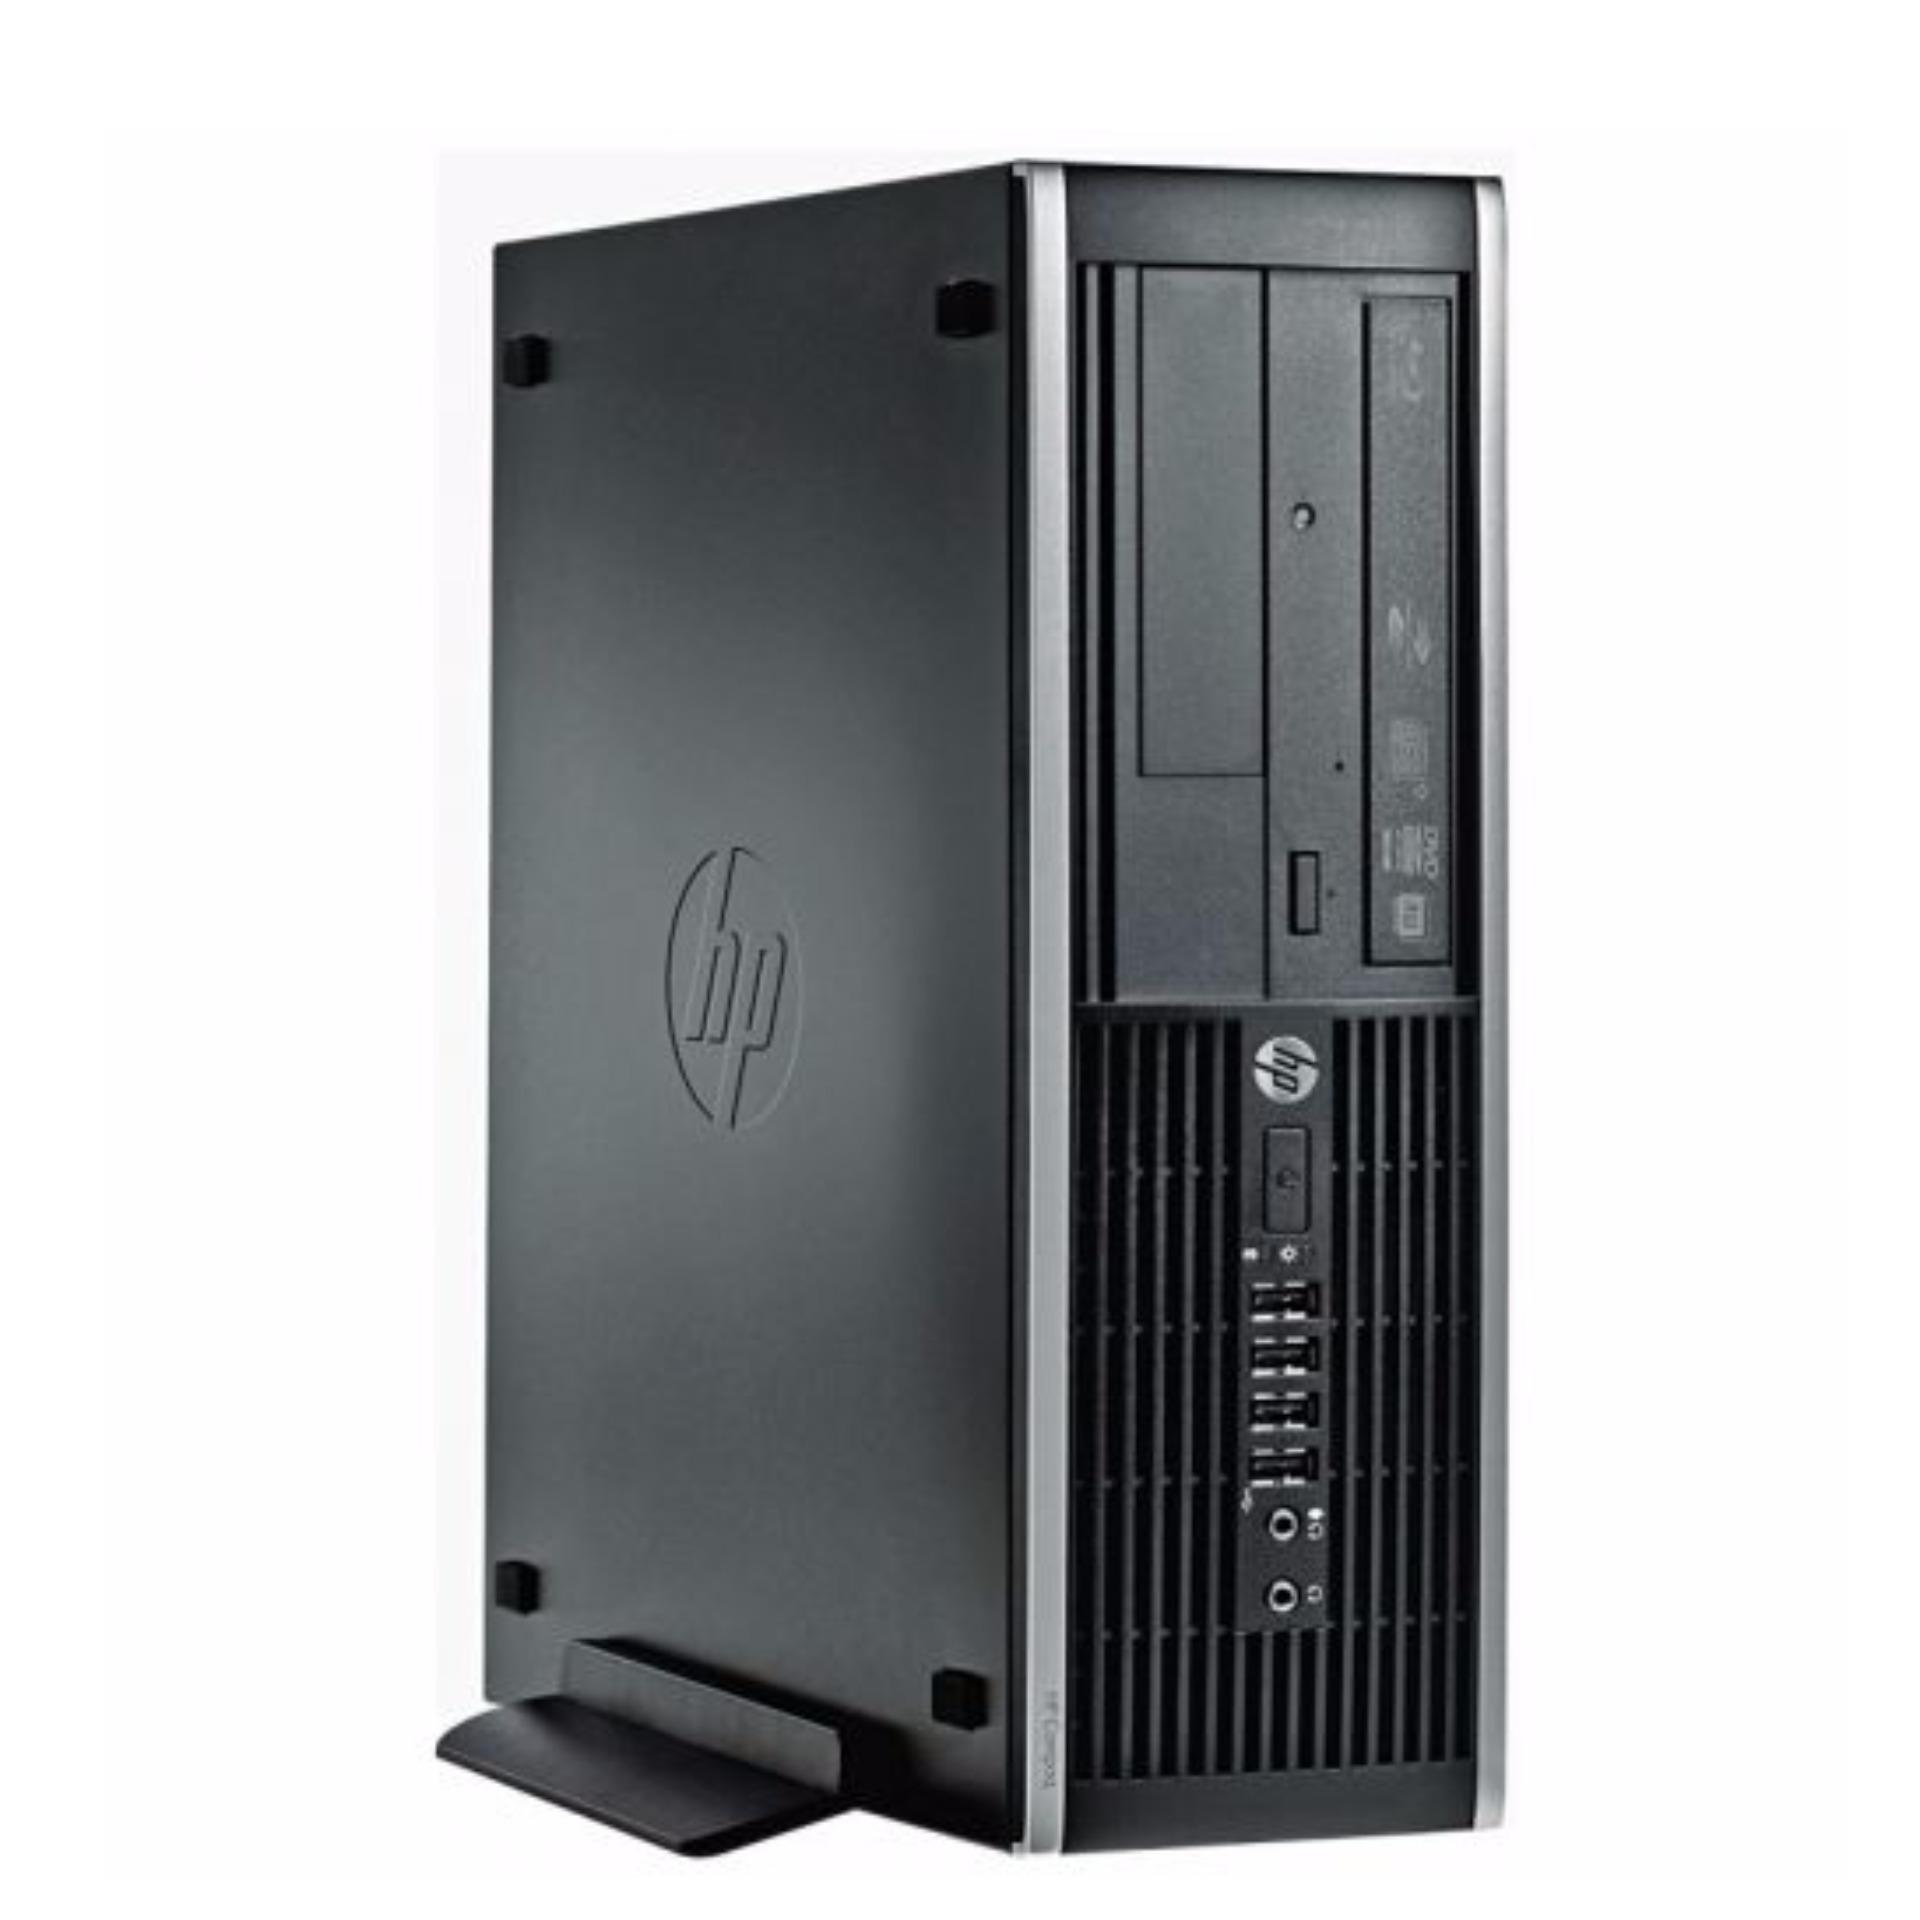 Máy tính đồng bộ HP Compaq DC 6300 Pro Core i3 RAM 4GB HDD 250GB